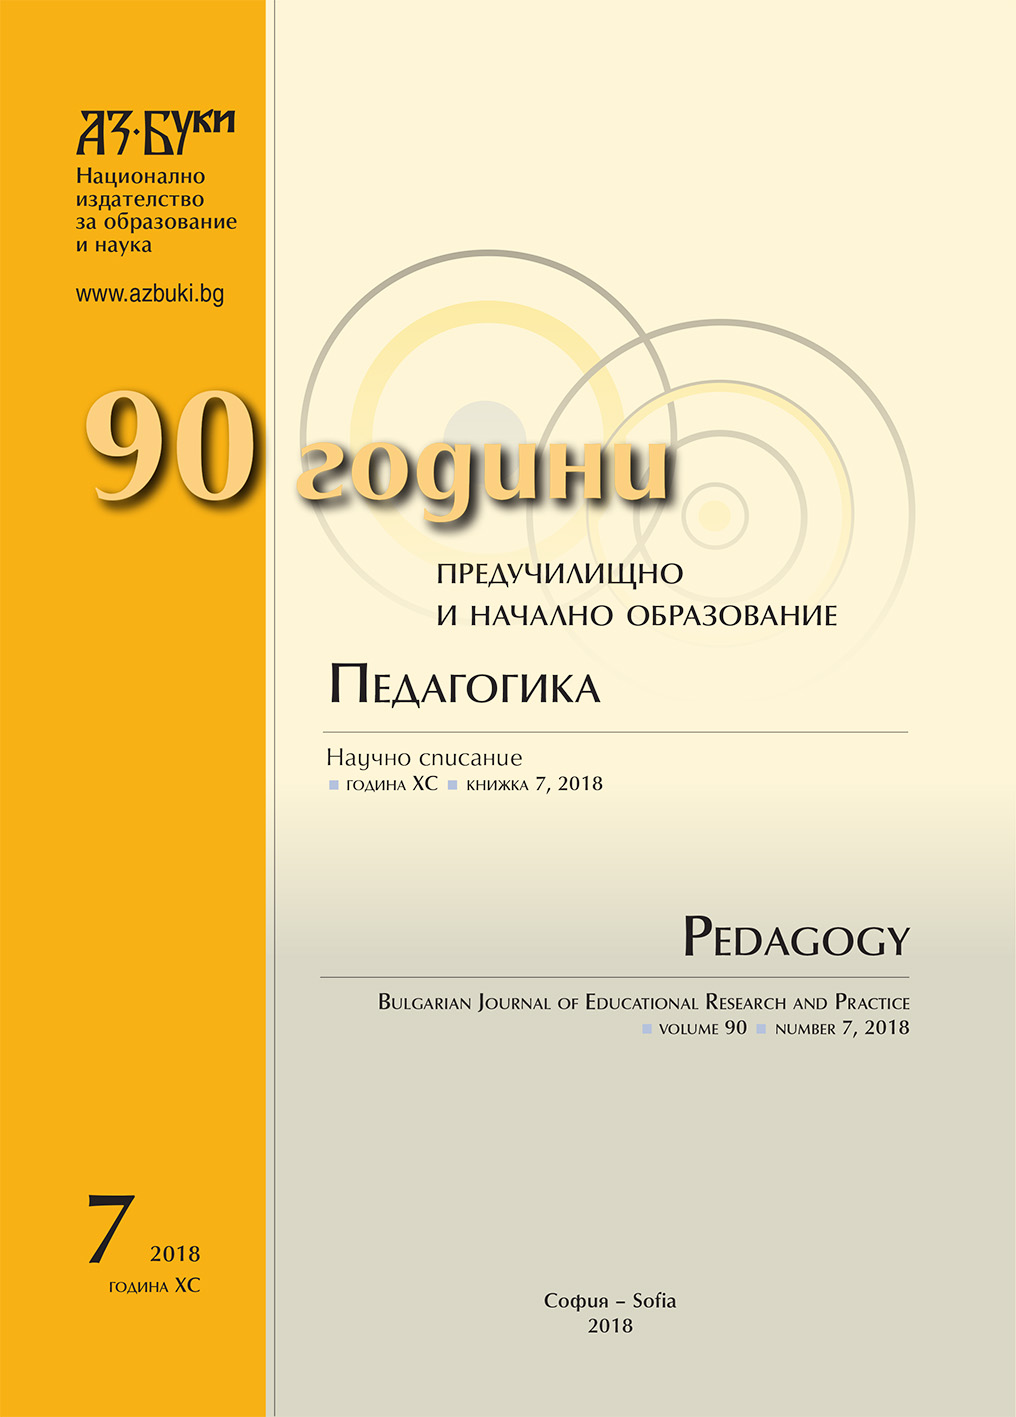 Музеят и „културата на участие“ – проекции в български образователен контекст